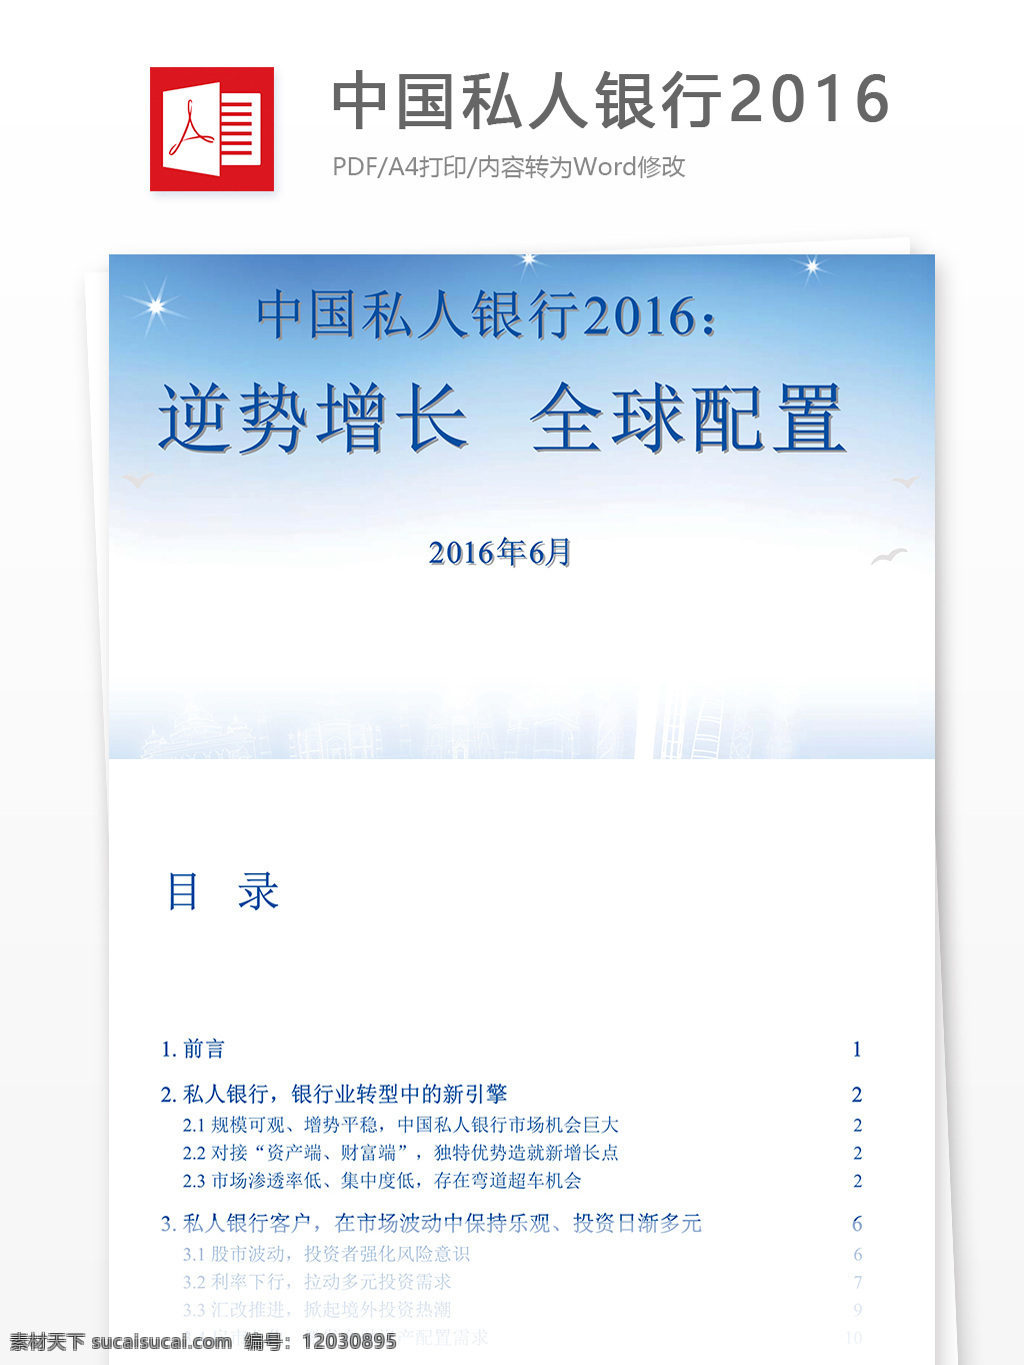 中国 私人 银行 2016 私人银行 报告 全球配置